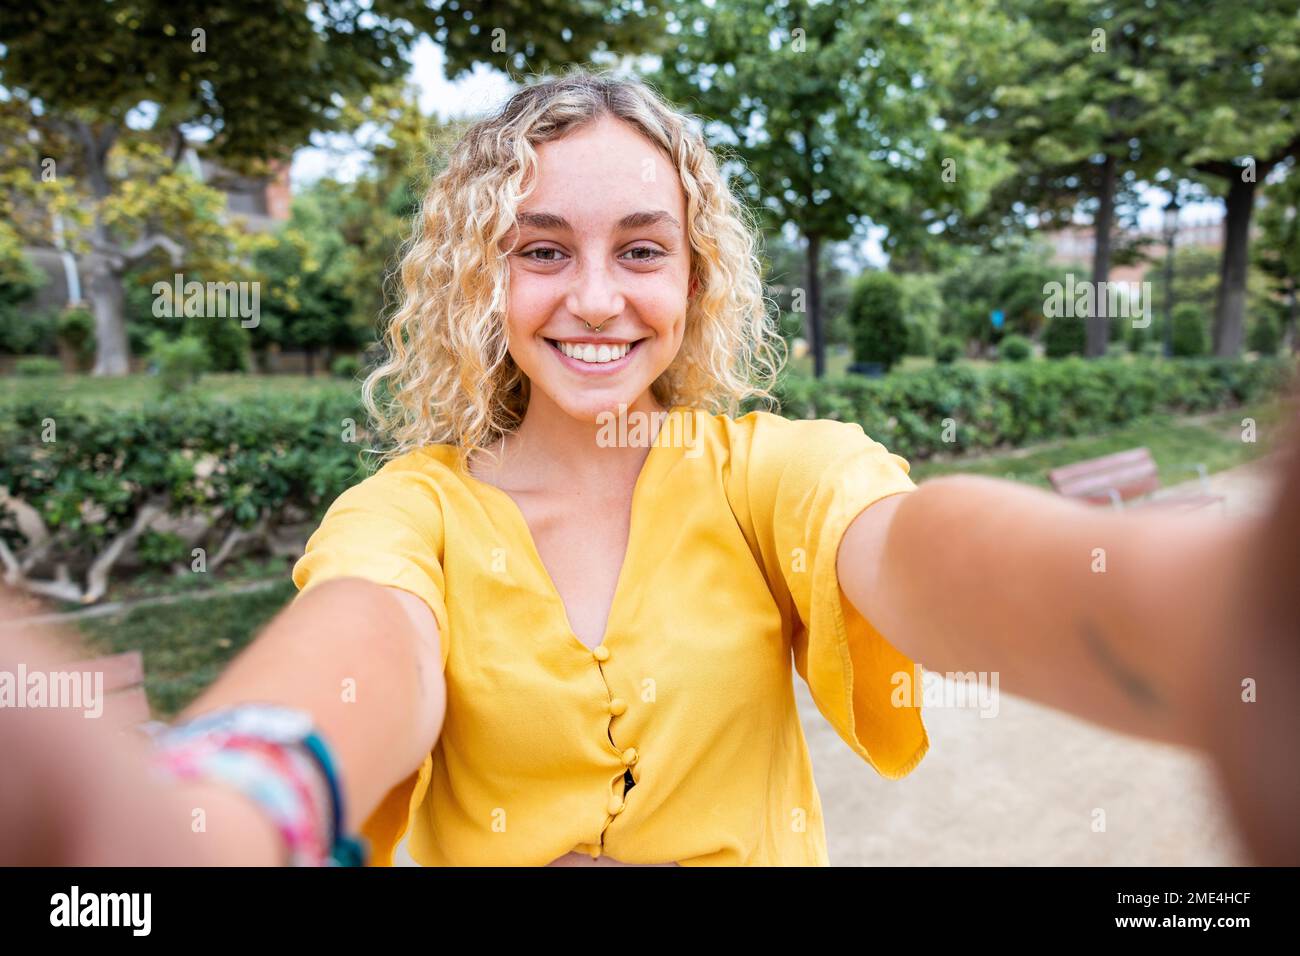 Glückliche junge Frau mit blondem Haar, die Selfie im Park macht Stockfoto